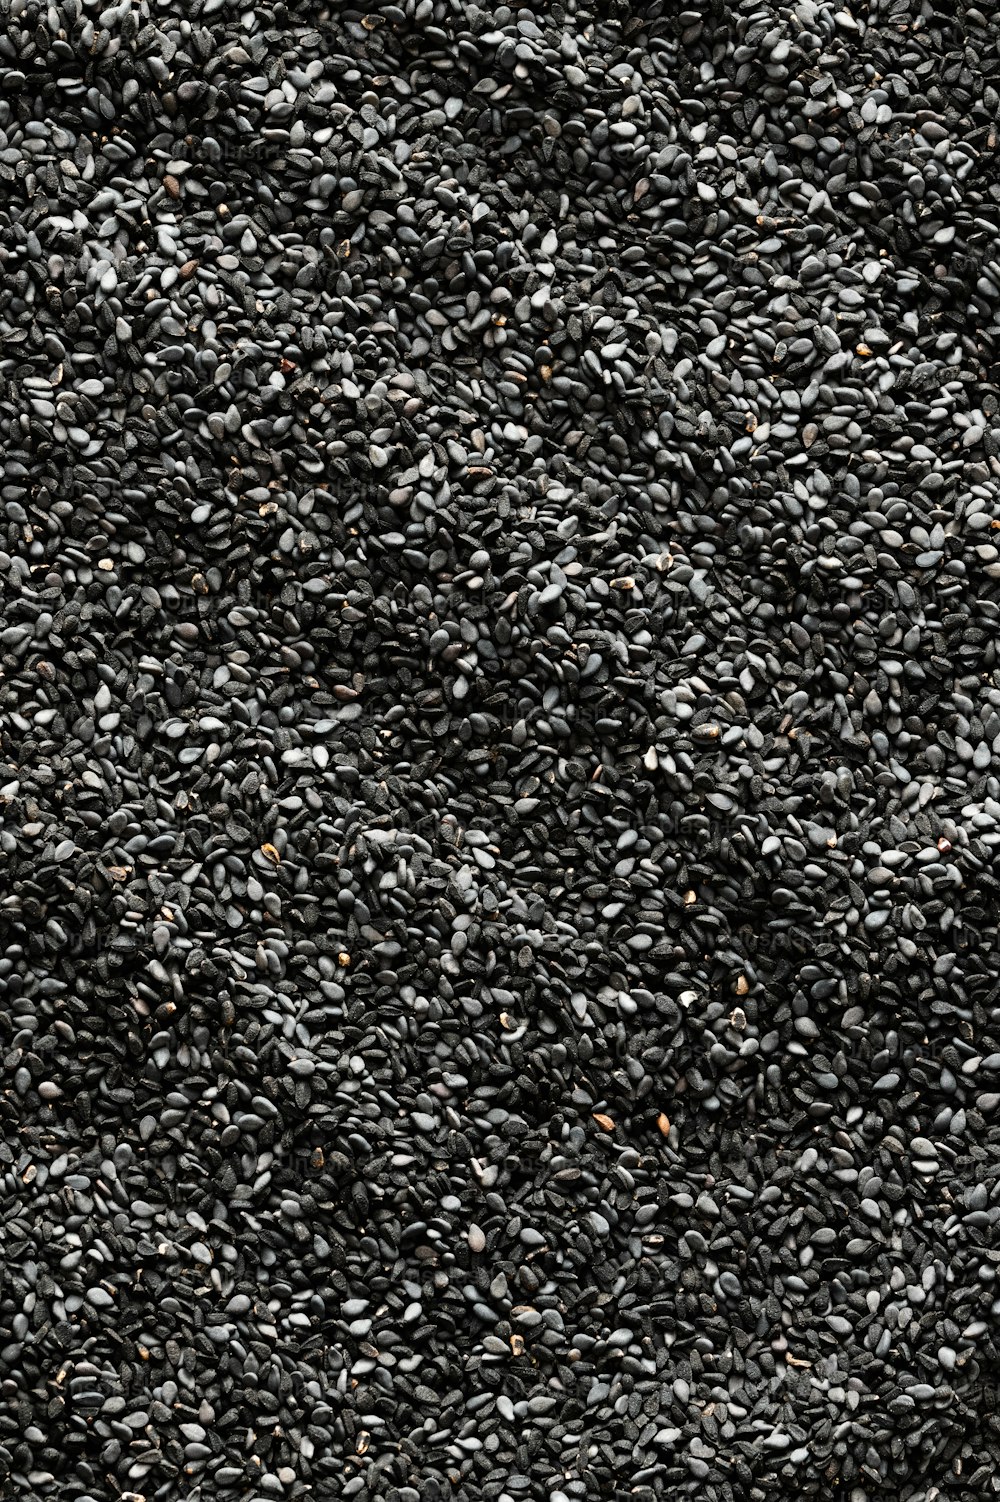 un tas de graines de sésame noires sur une surface blanche